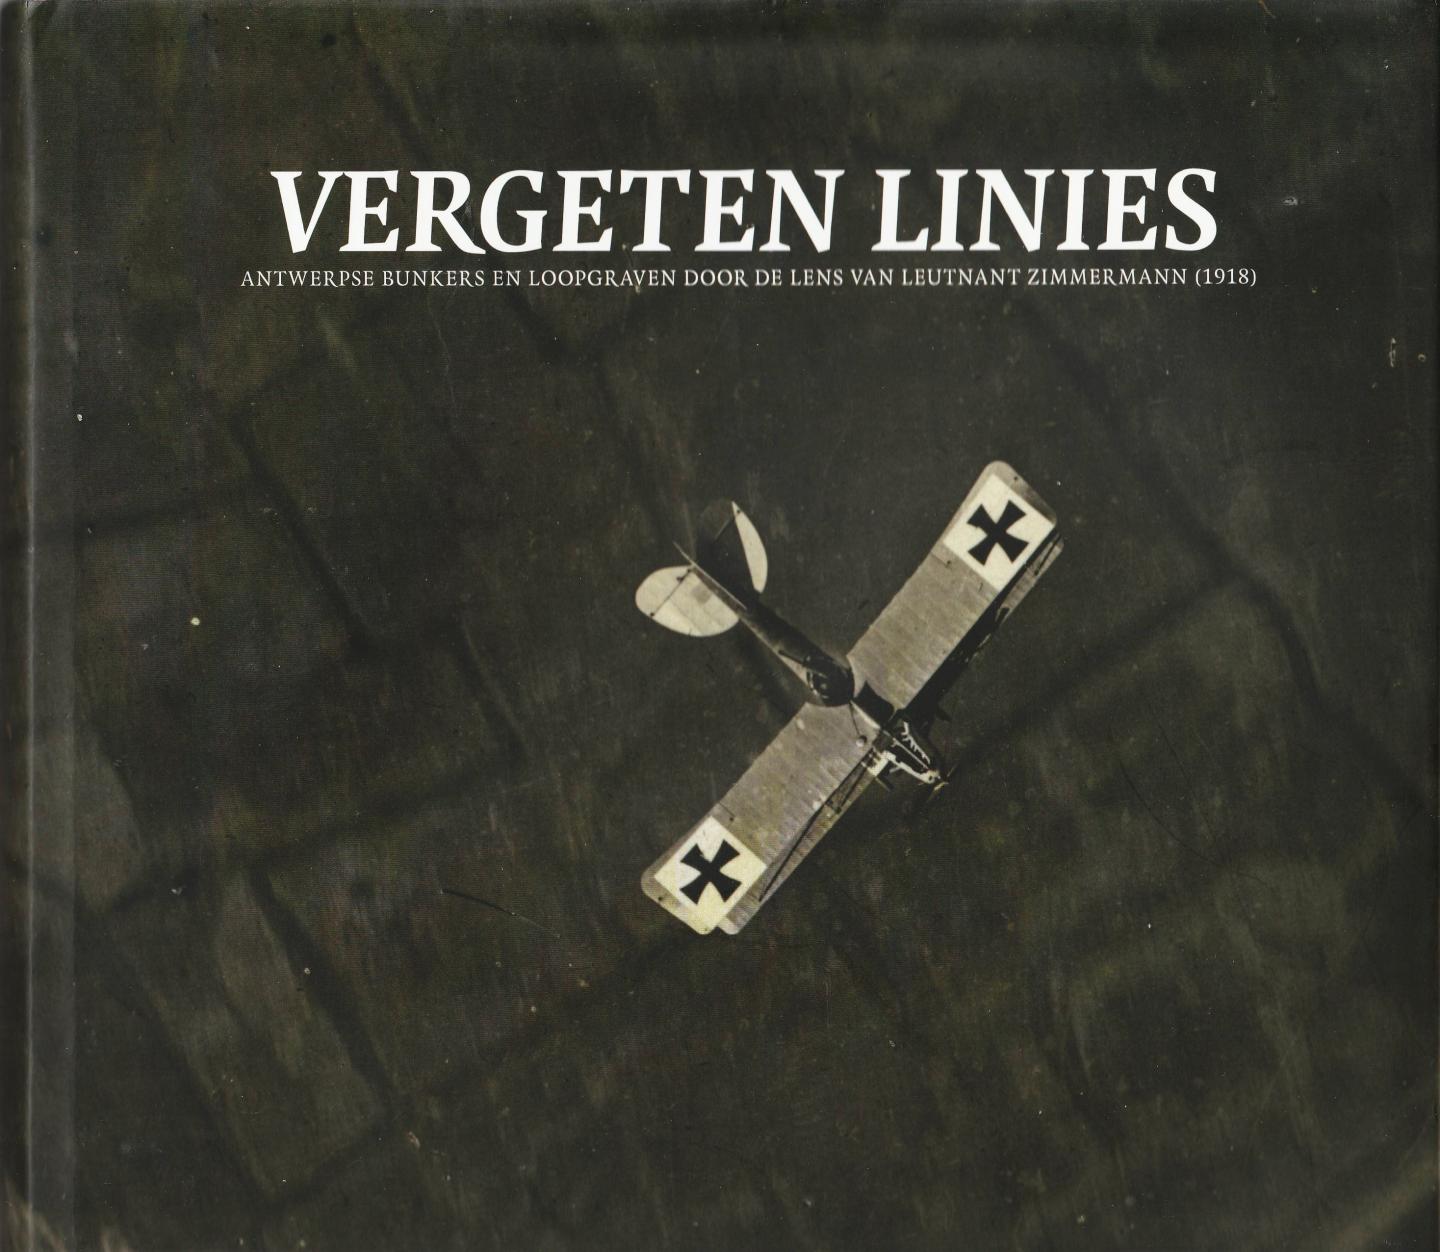 Gheyle Wouter & Bourgeois Ignace - Vergeten linies deel 2. Antwerpse bunkers en loopgaven door de lens van Leutnant Zimmermann (1918)